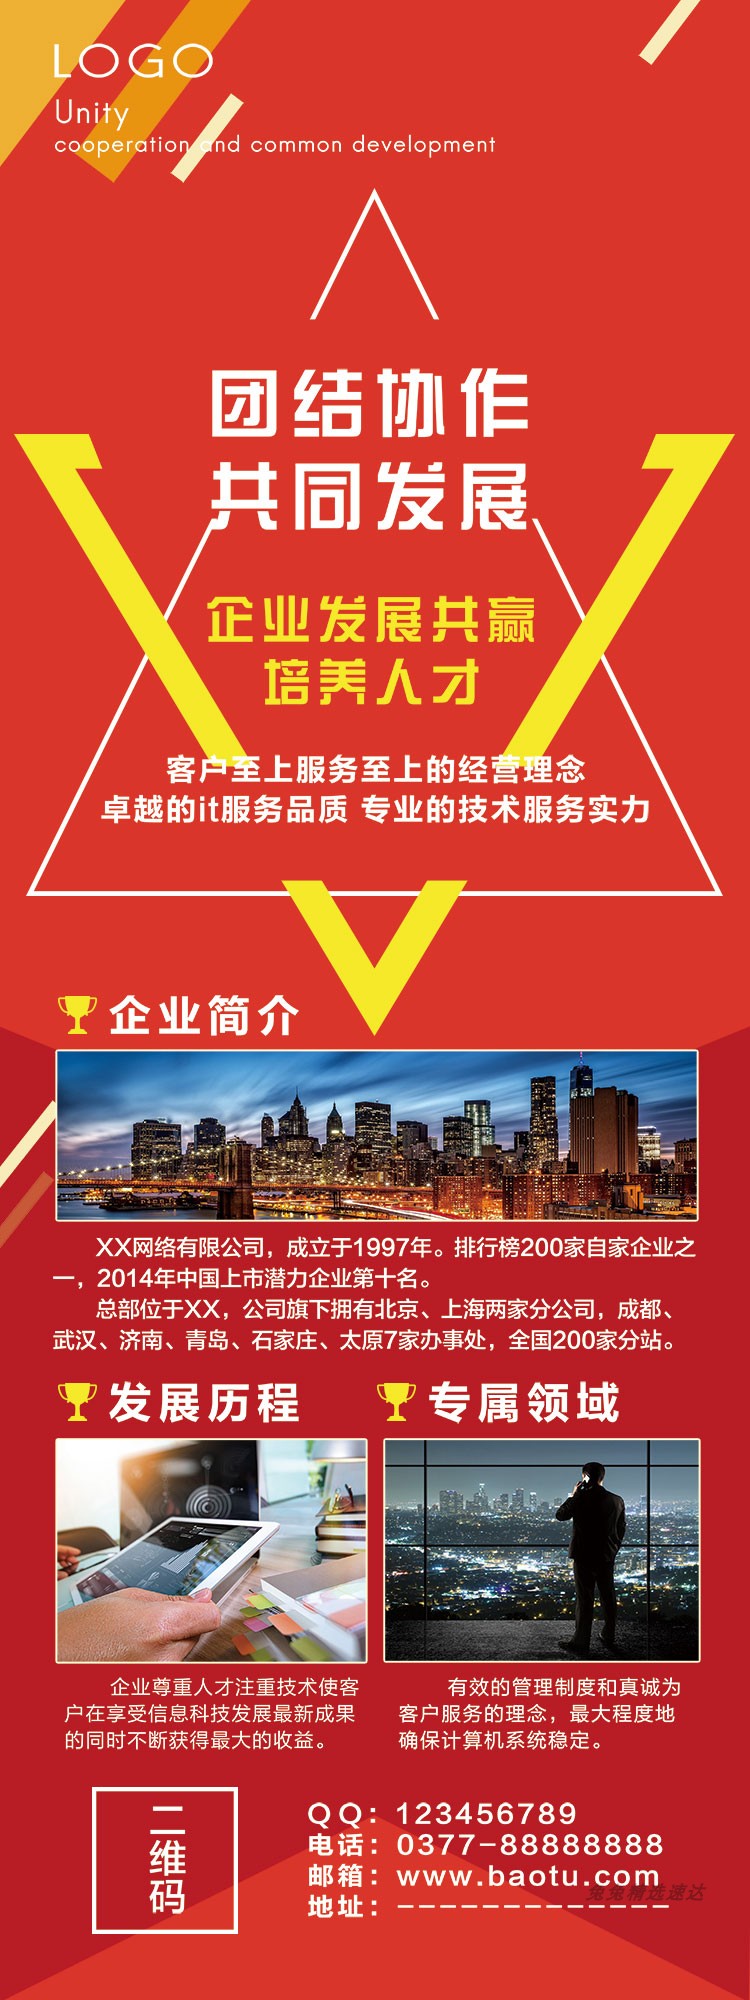 企业公司介绍宣传商务x展架促销活动易拉宝PSD海报广告素材模板 第7张